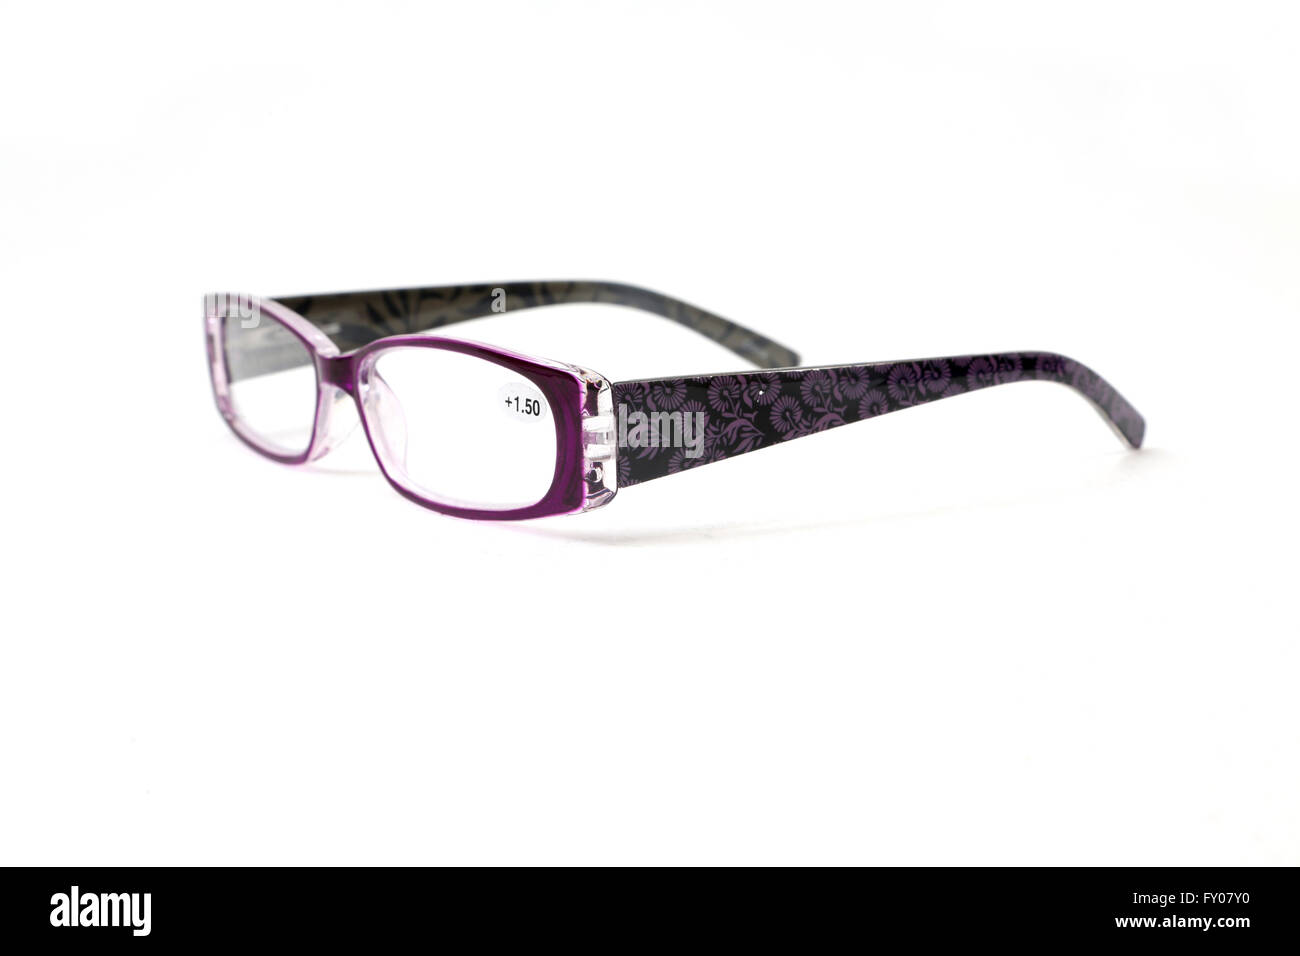 Púrpura gafas de lectura con dibujos florales en los brazos Foto de stock